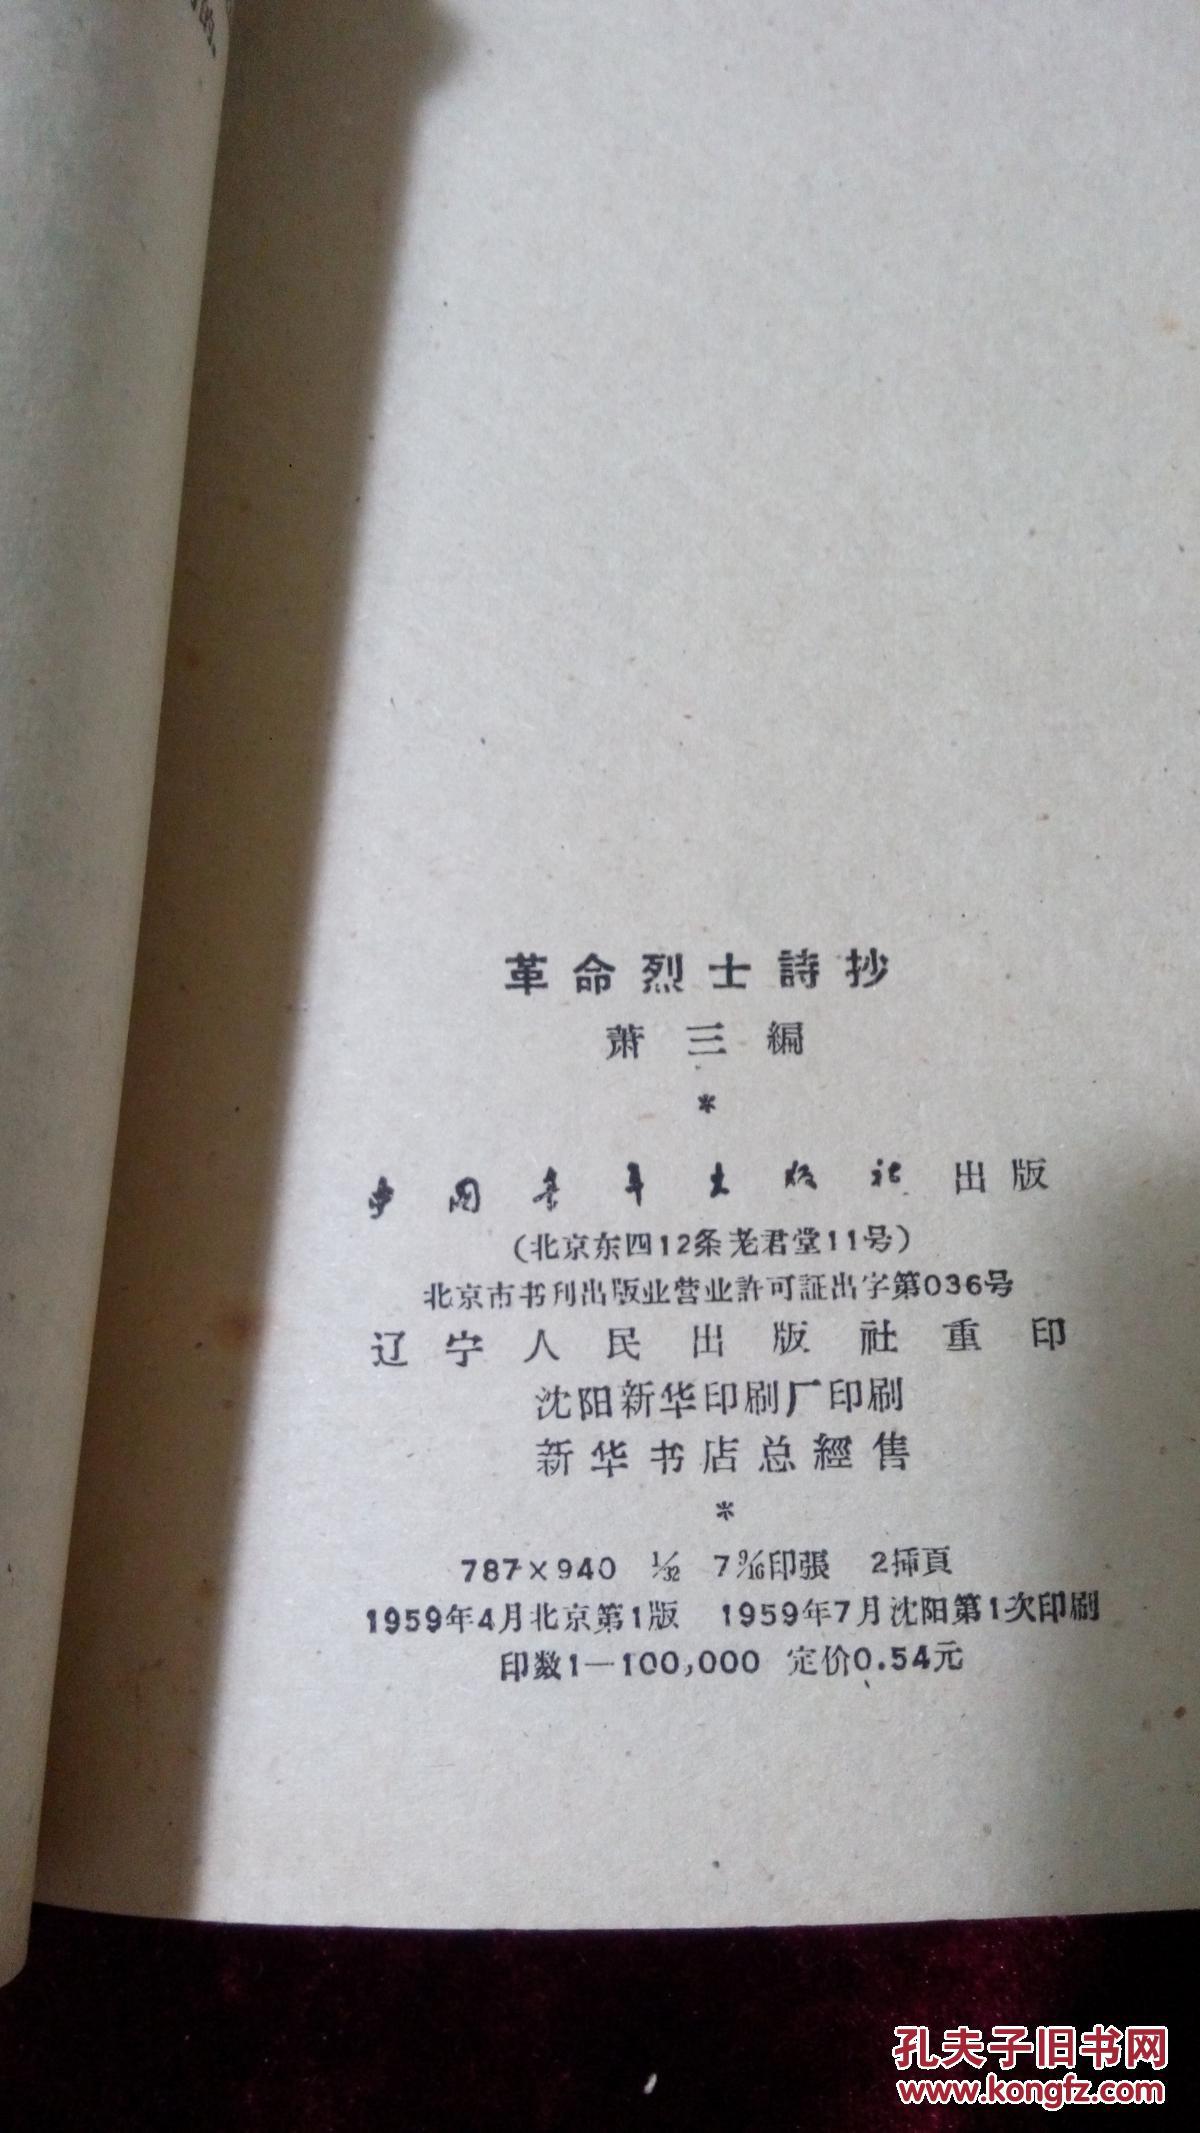 革命烈士诗抄----萧三编------1959年版